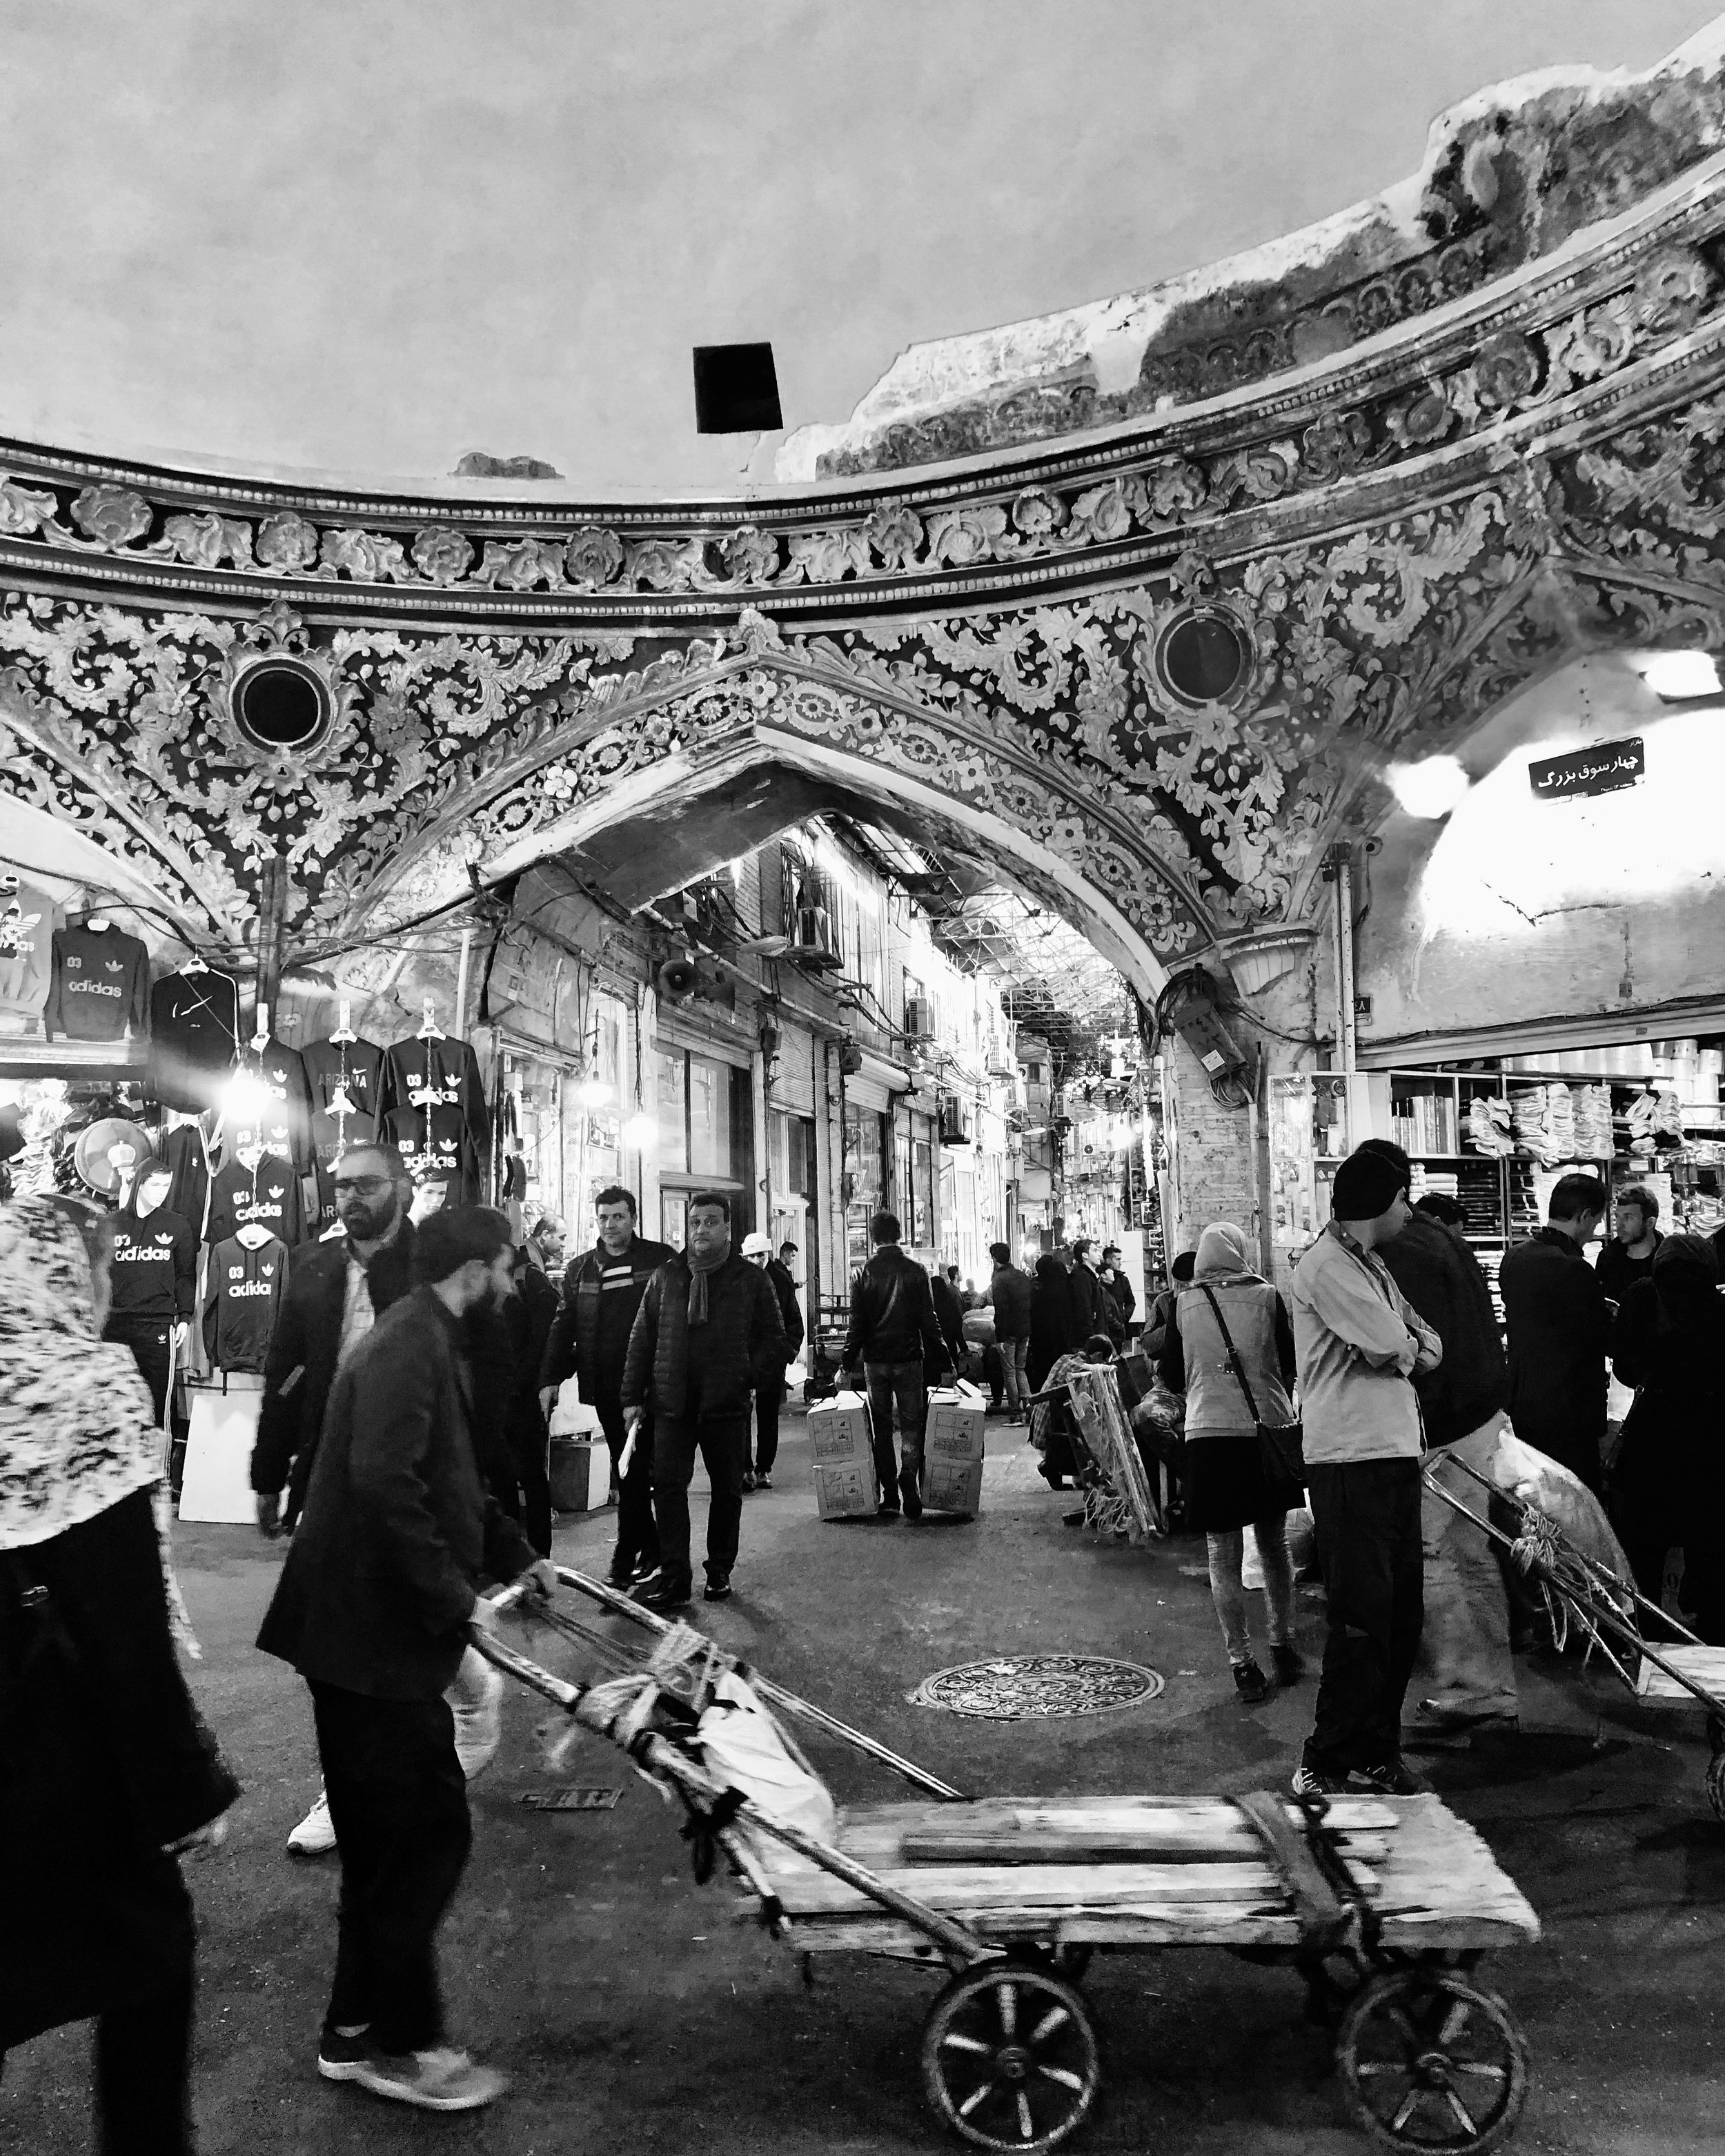  Tehran, Iran, 2018 